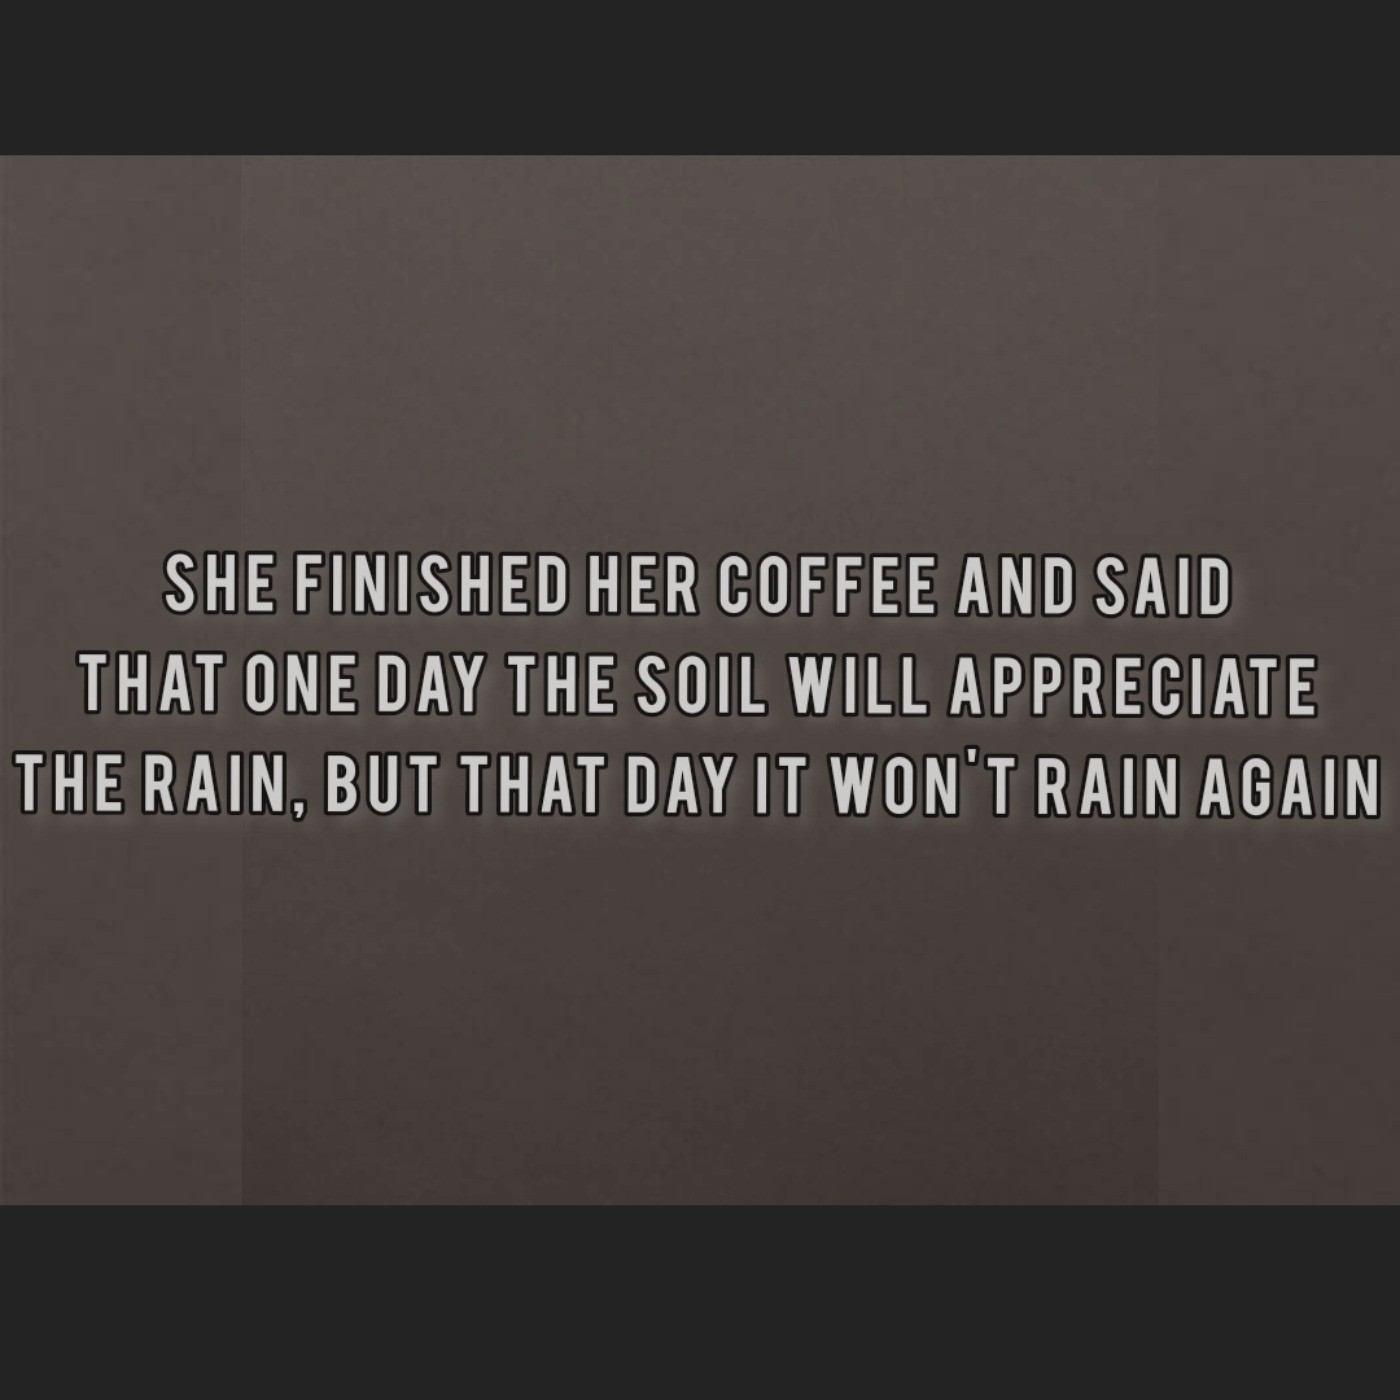 قهوه اش رو تموم کرد و گفت: یه روزی